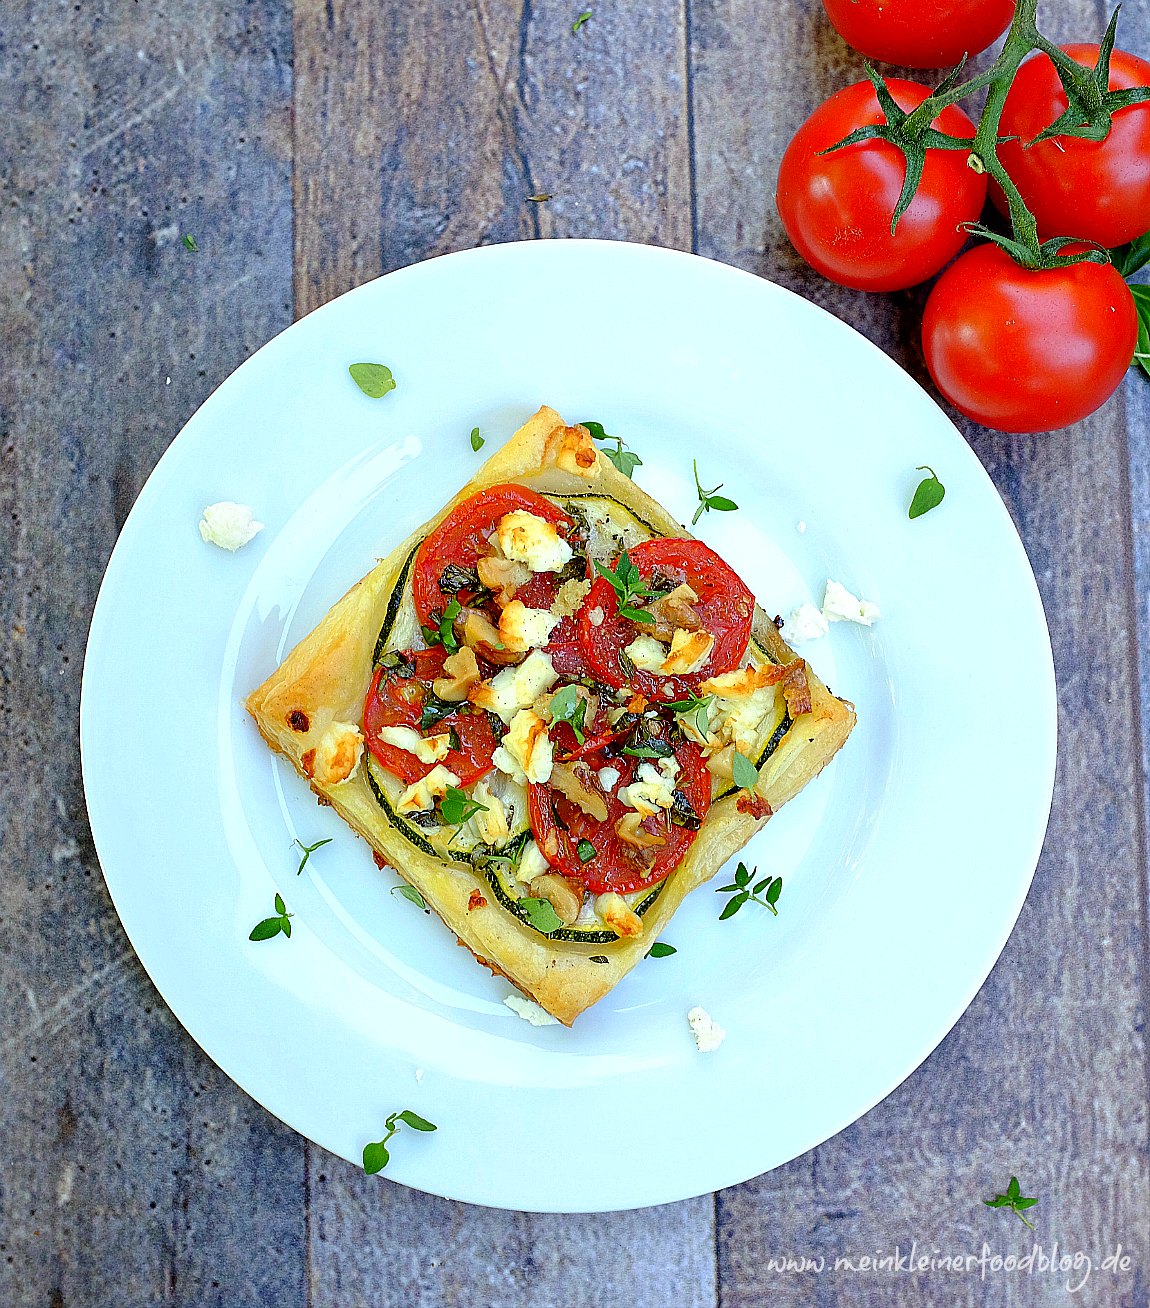 Feierabendküche: Eine schnelle leckere Tomaten-Zucchini-Blätterteig-Tartelettes mit Feta. Ruckzuck fertig!